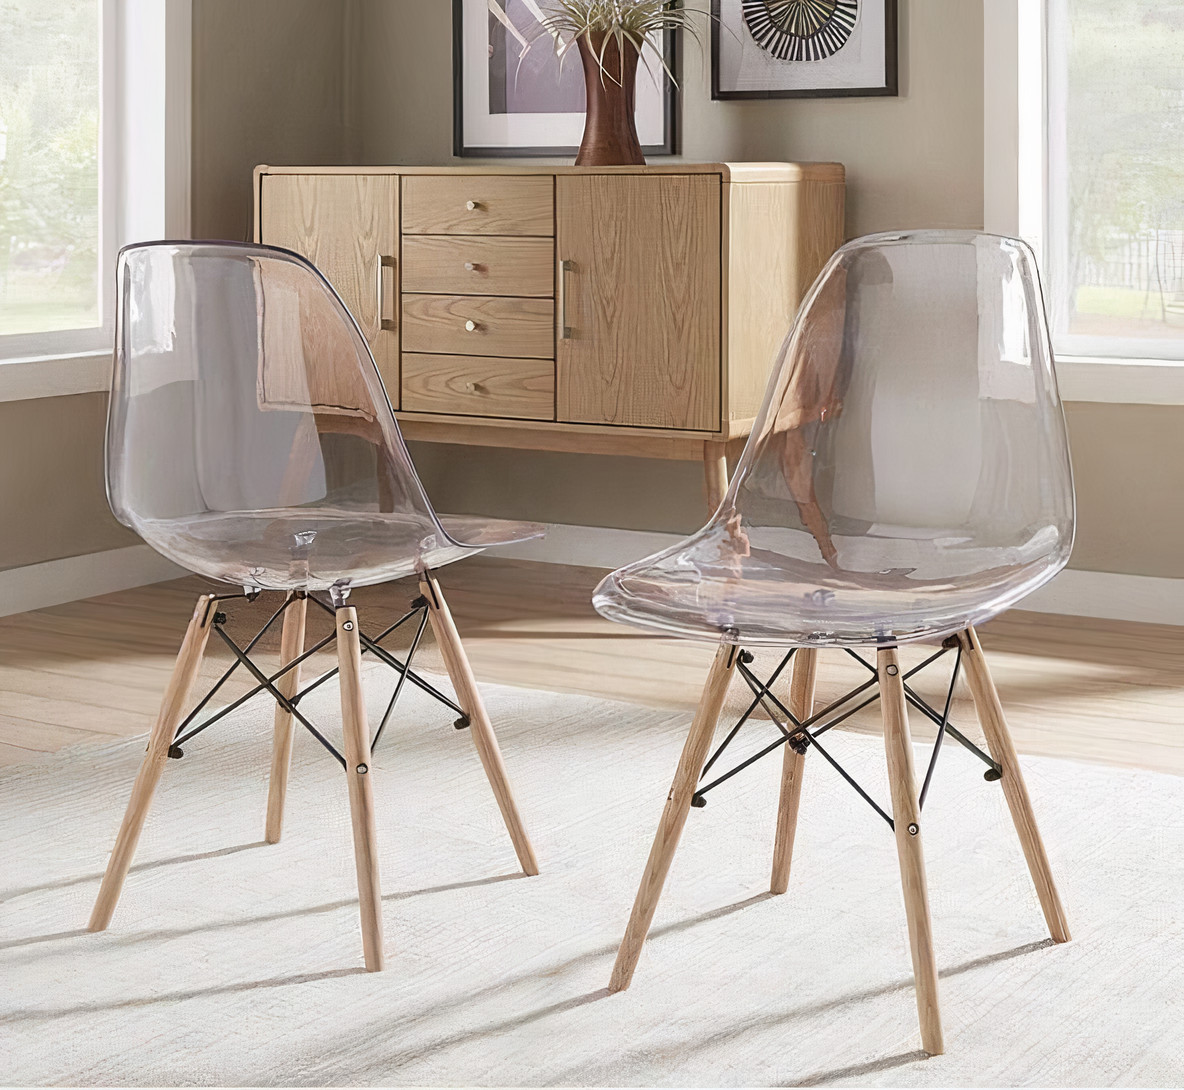 Cadeira Eames Eiffel: Inspire-se e escolha a sua!